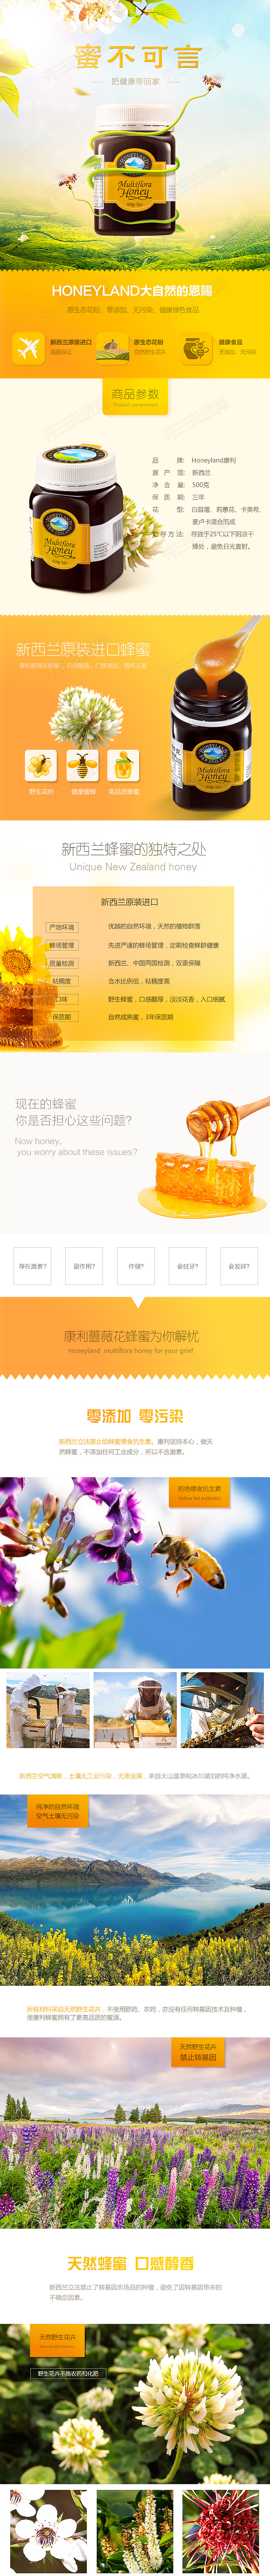 淘宝美工橙子设计师蜂蜜食品详情页作品